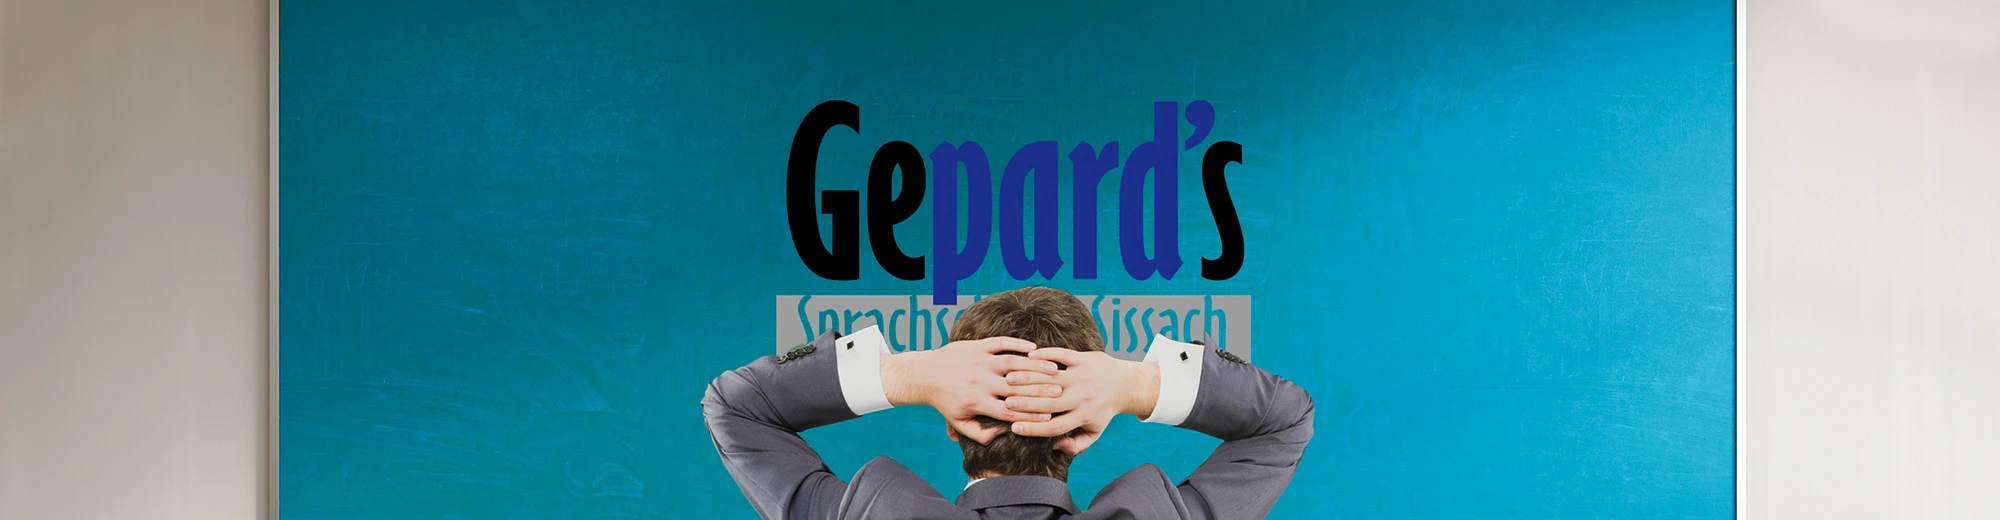 Gepard's Sprachschule